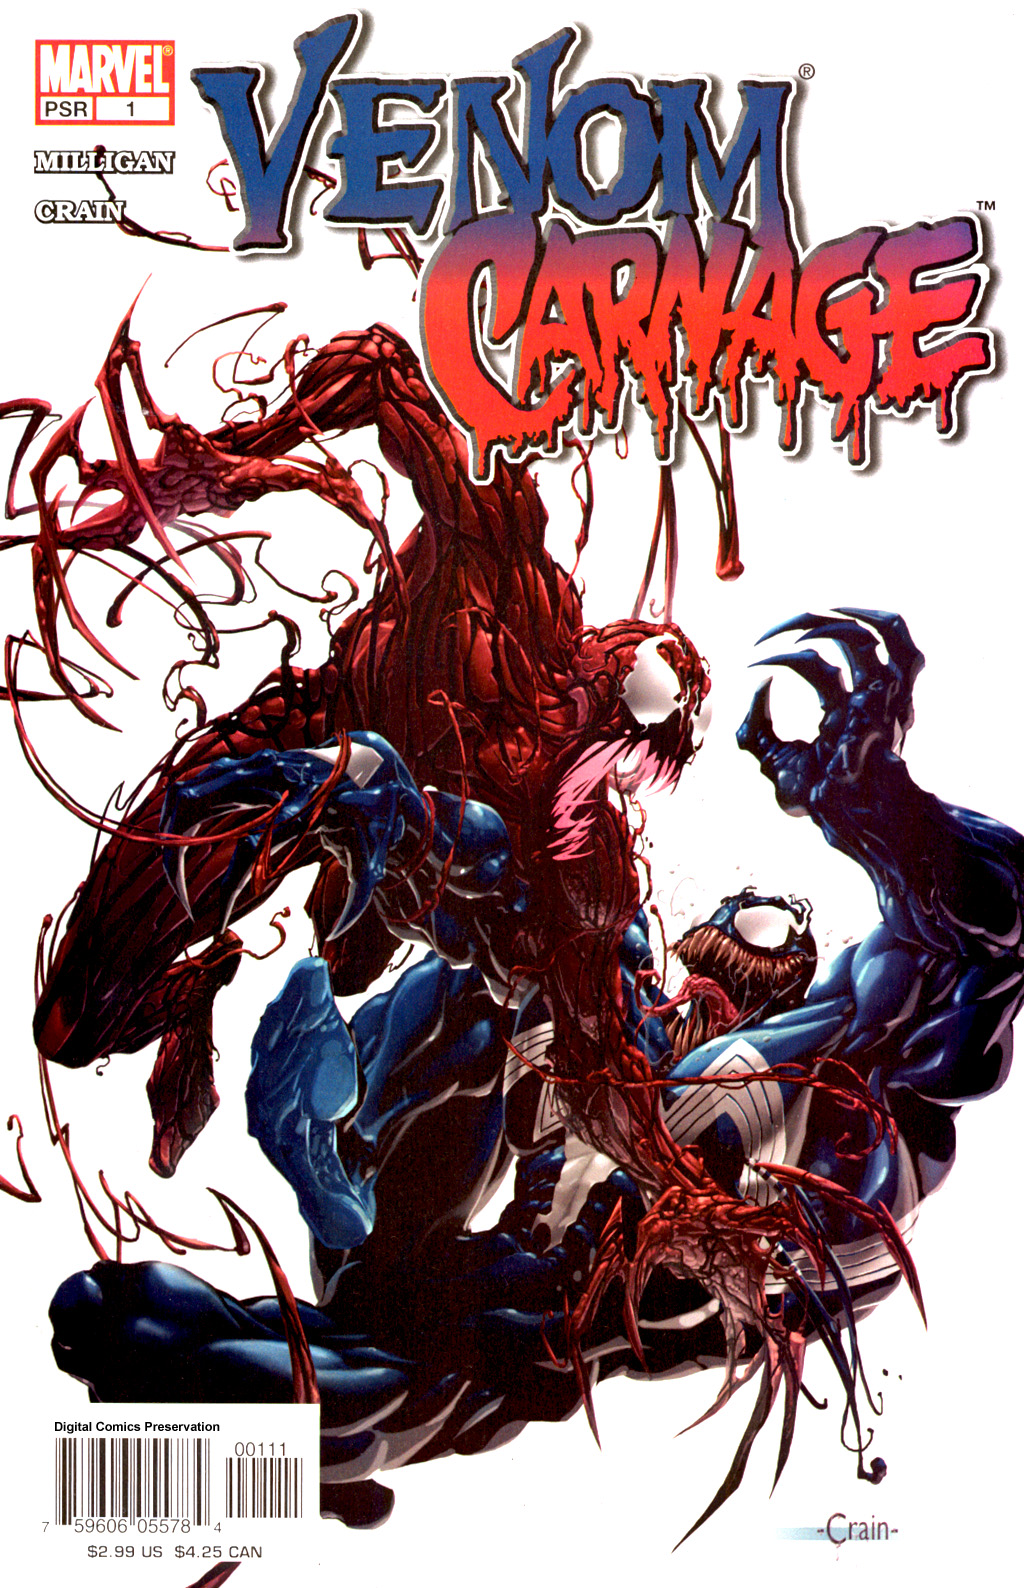 Venom Vs Carnage Backgrounds, Compatible - PC, Mobile, Gadgets| 1024x1588 px